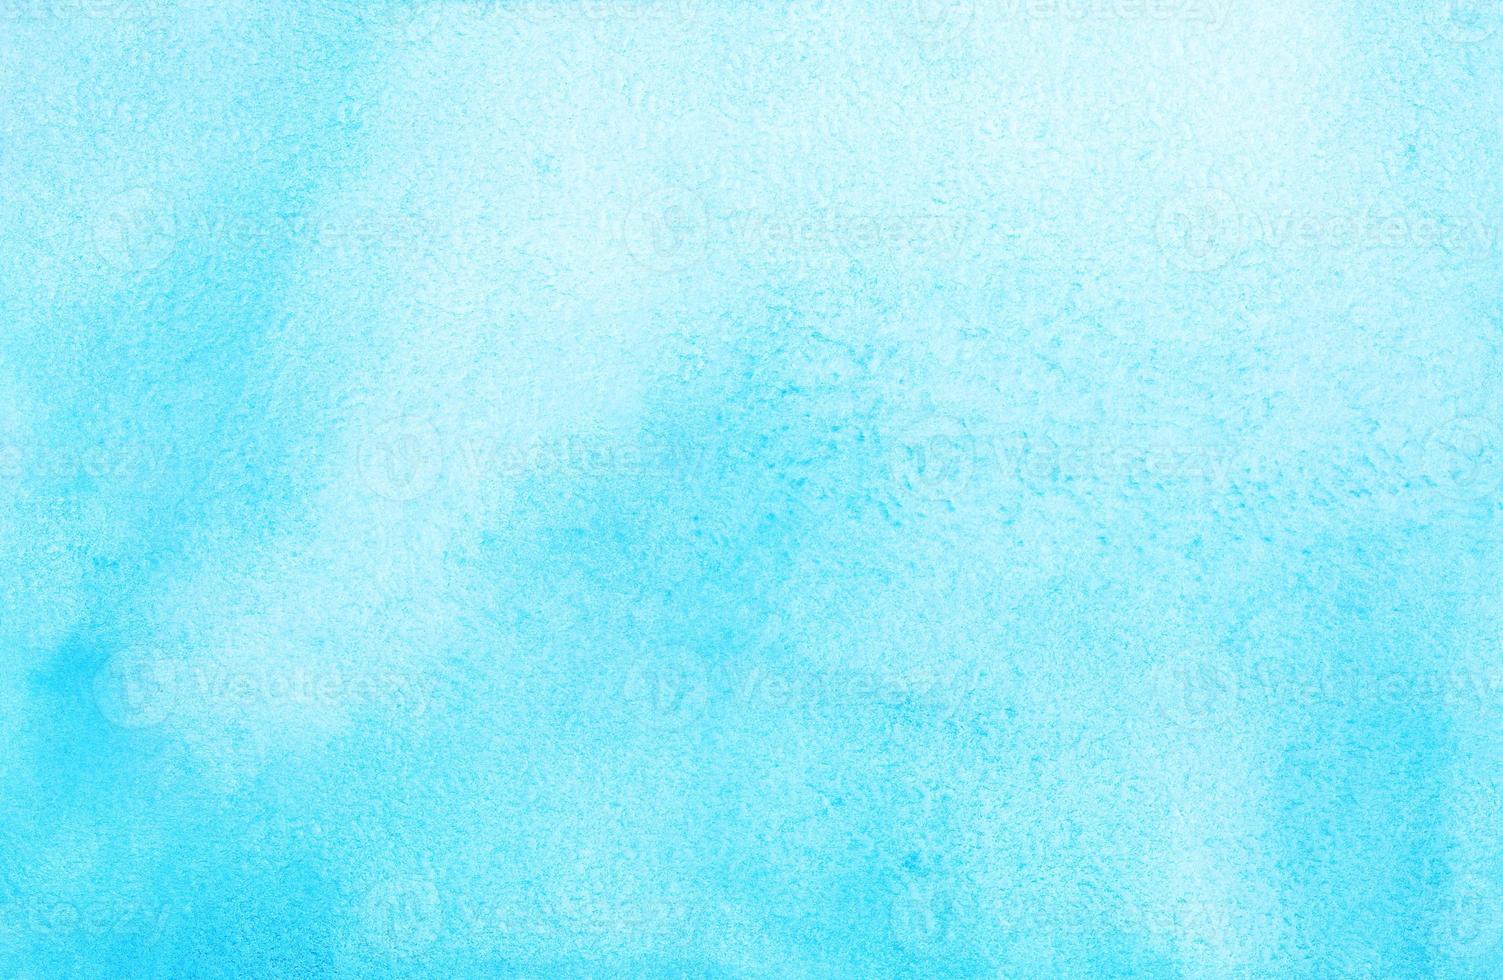 pintura de fundo azul ciano claro em aquarela. manchas de aquarela azul céu brilhante no papel. pano de fundo artístico. foto